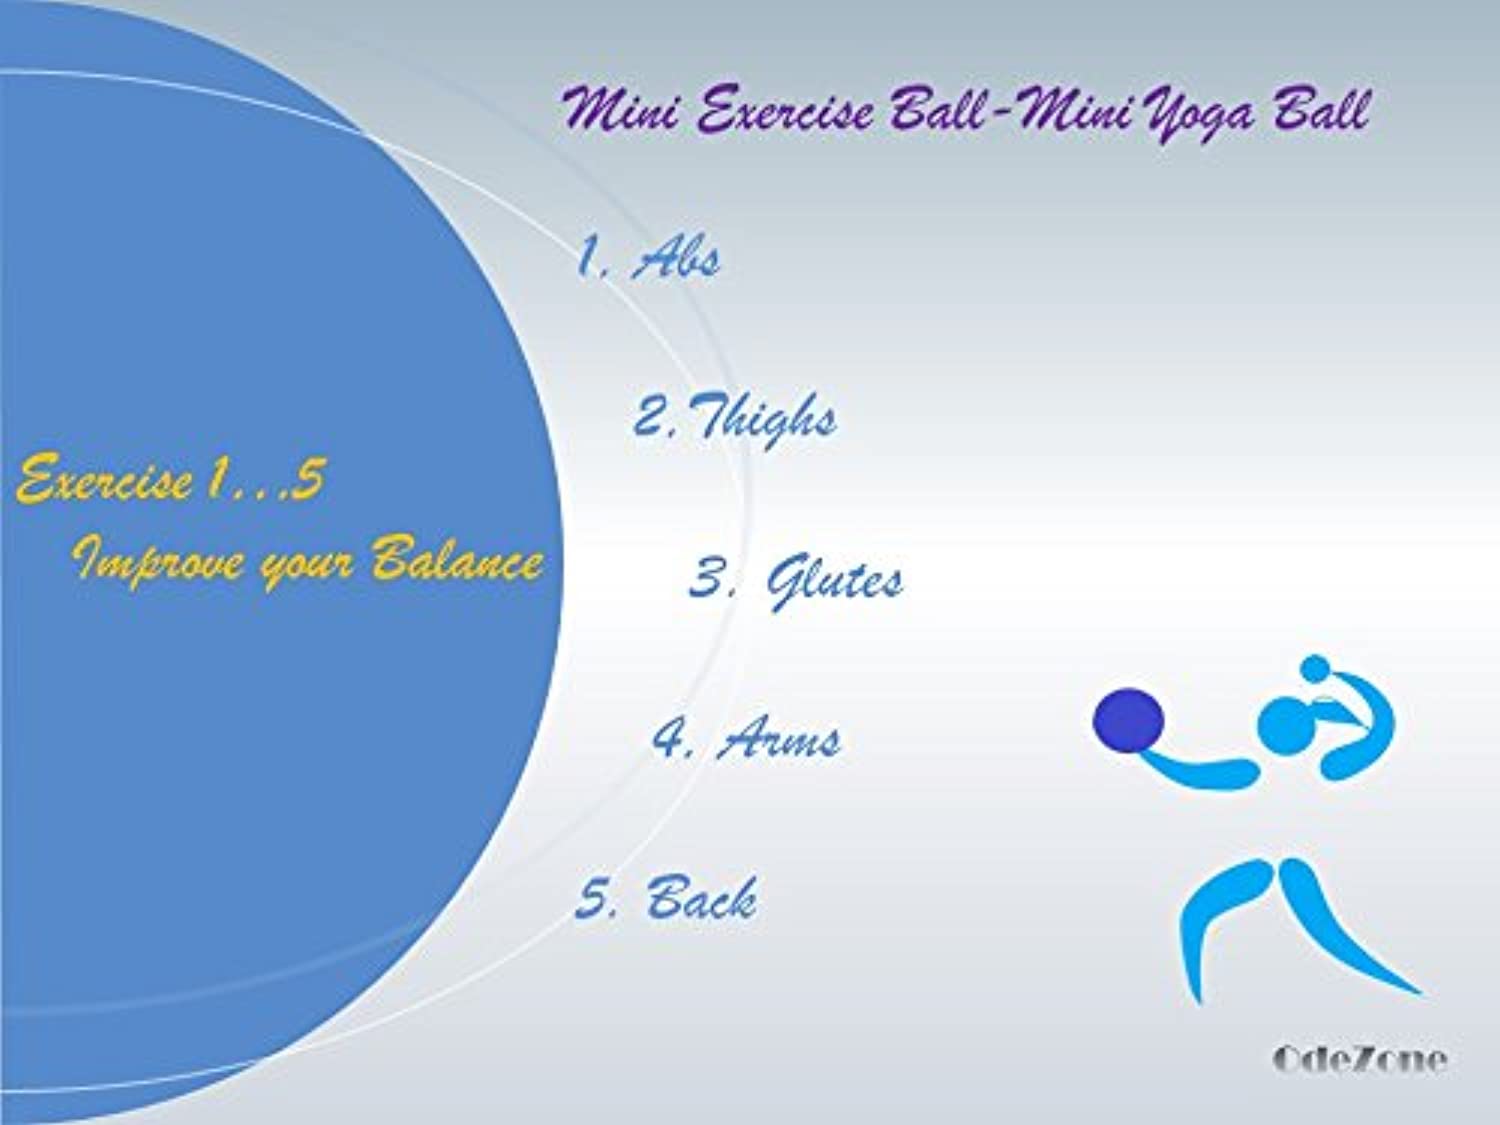 3 piezas de ejercicio de pilates mini pelota de yoga de 6 pulgadas – Barre  pequeña Bender entrenamiento fitness equilibrio fisioterapia bolas blandas